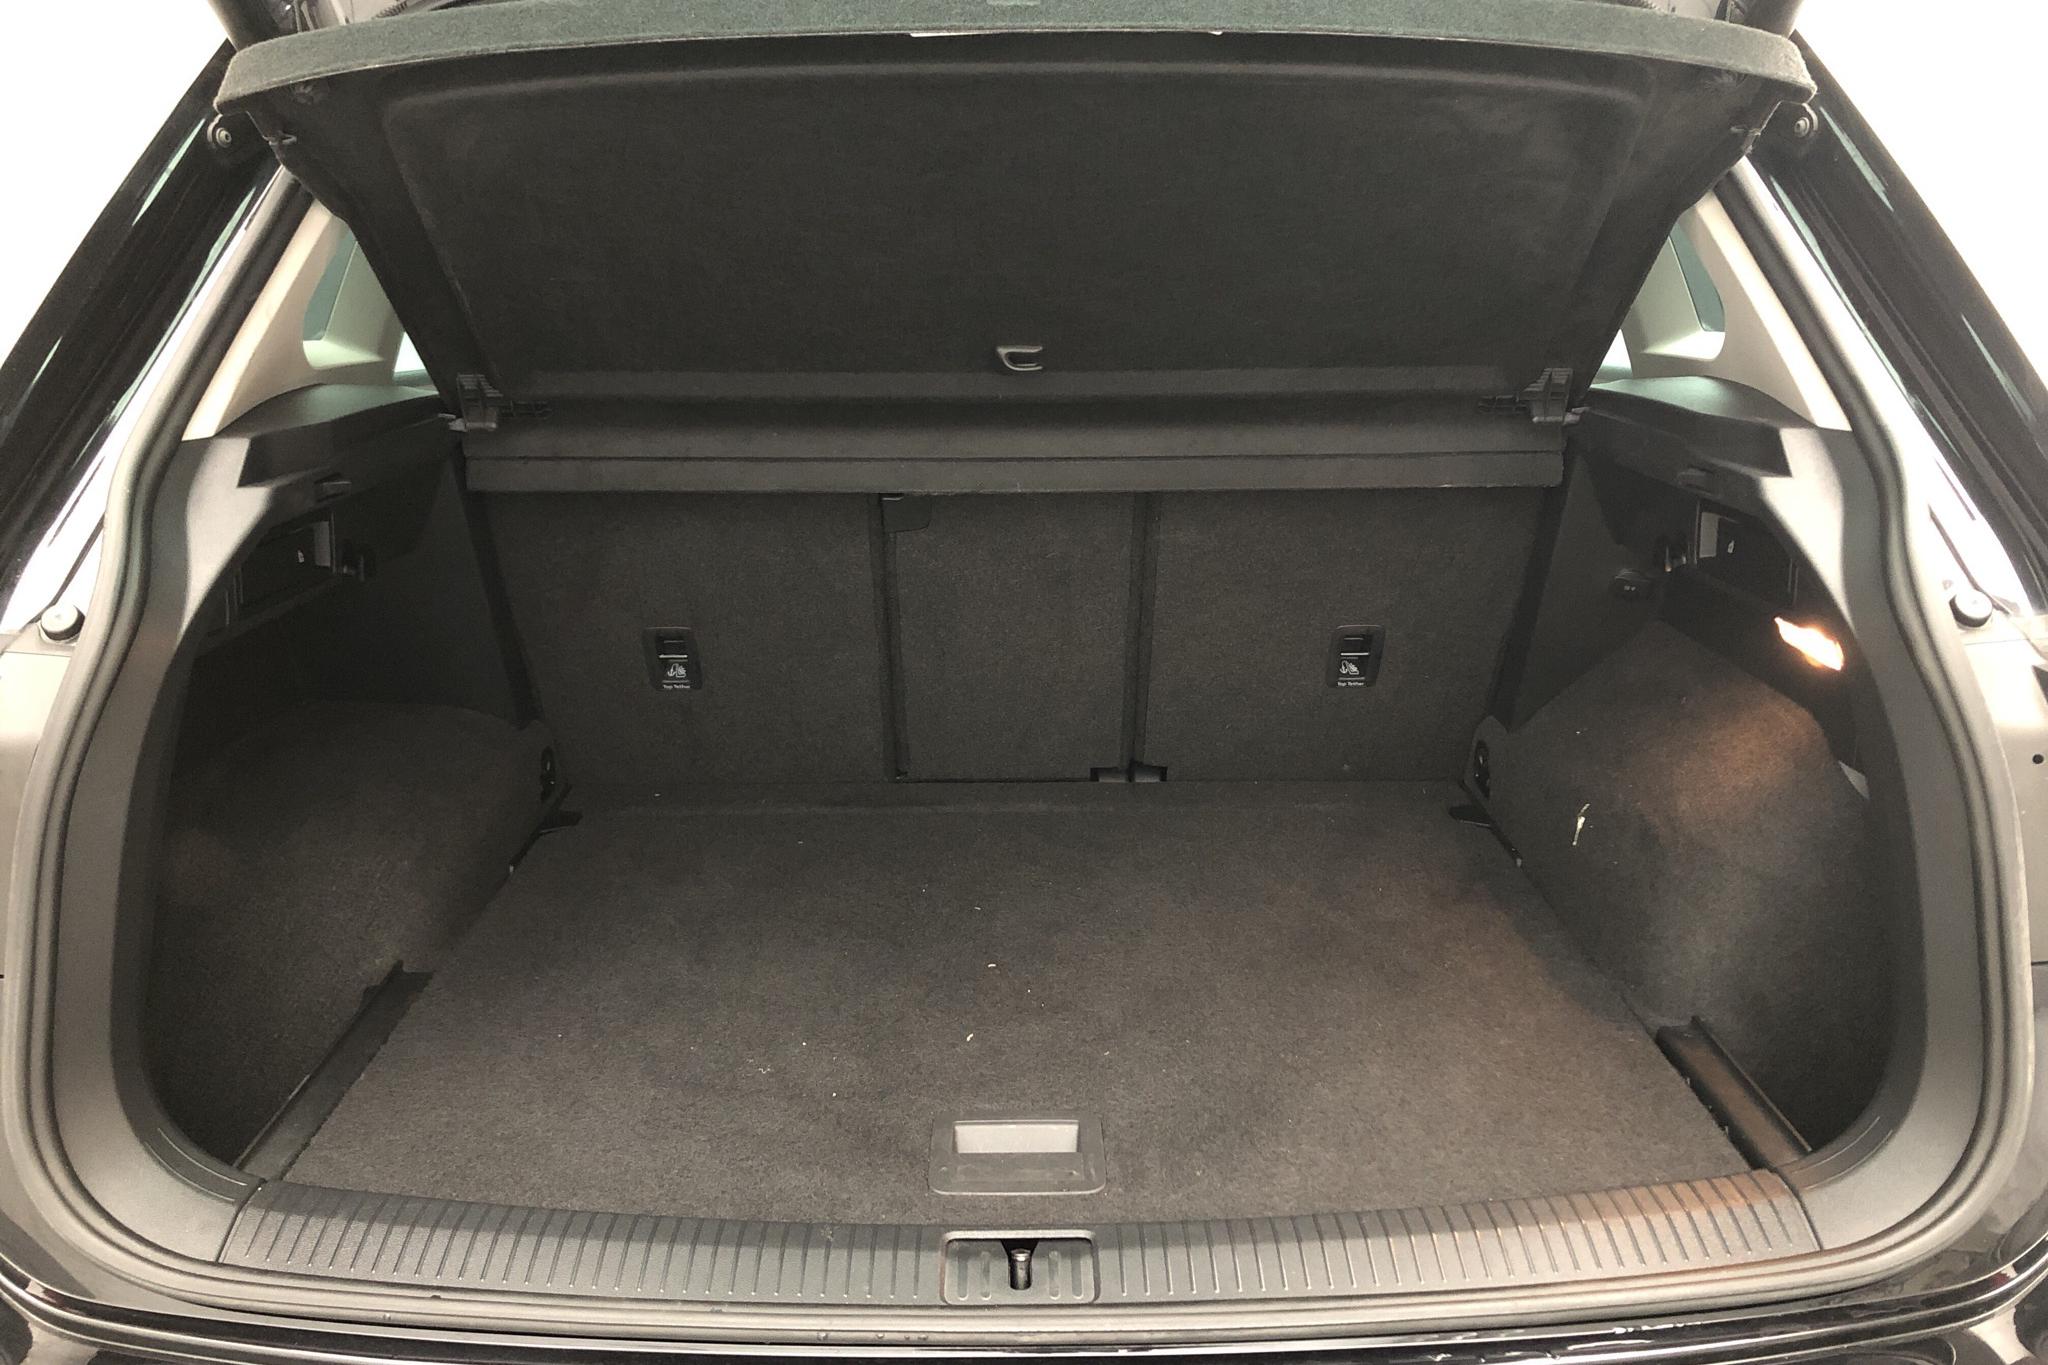 VW Tiguan 1.4 TSI 4MOTION (150hk) - 43 310 km - Automatic - black - 2018